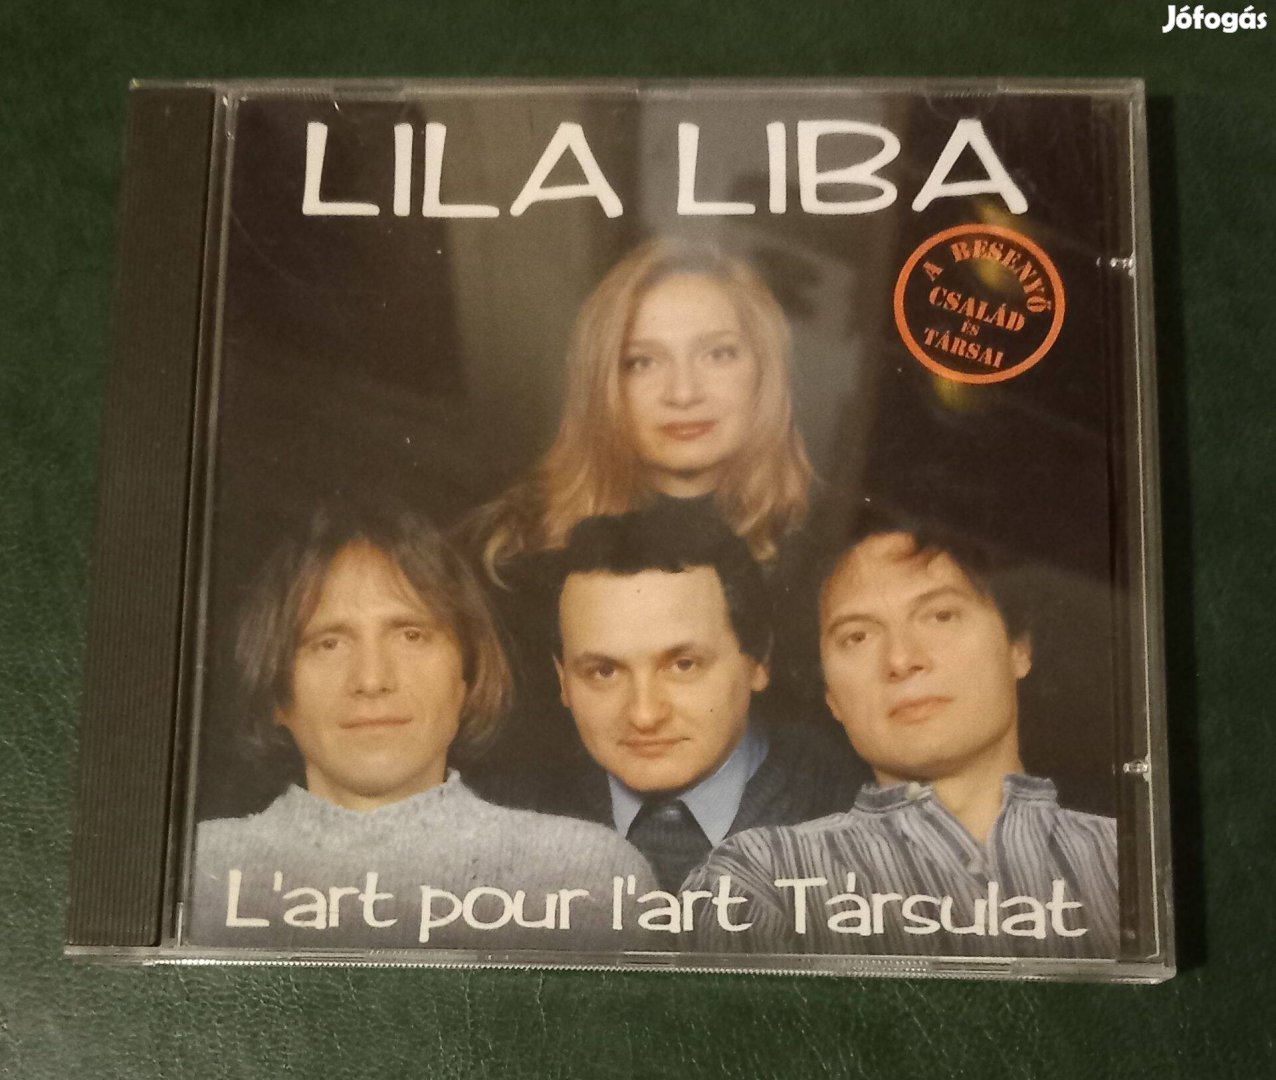 Lar't pour Lar't társulat-Lila liba ( Album )